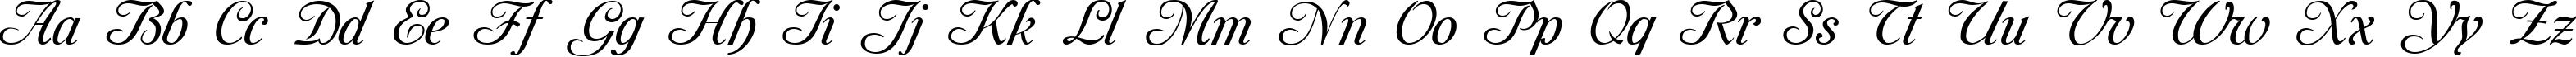 Пример написания английского алфавита шрифтом Mon Amour One Medium